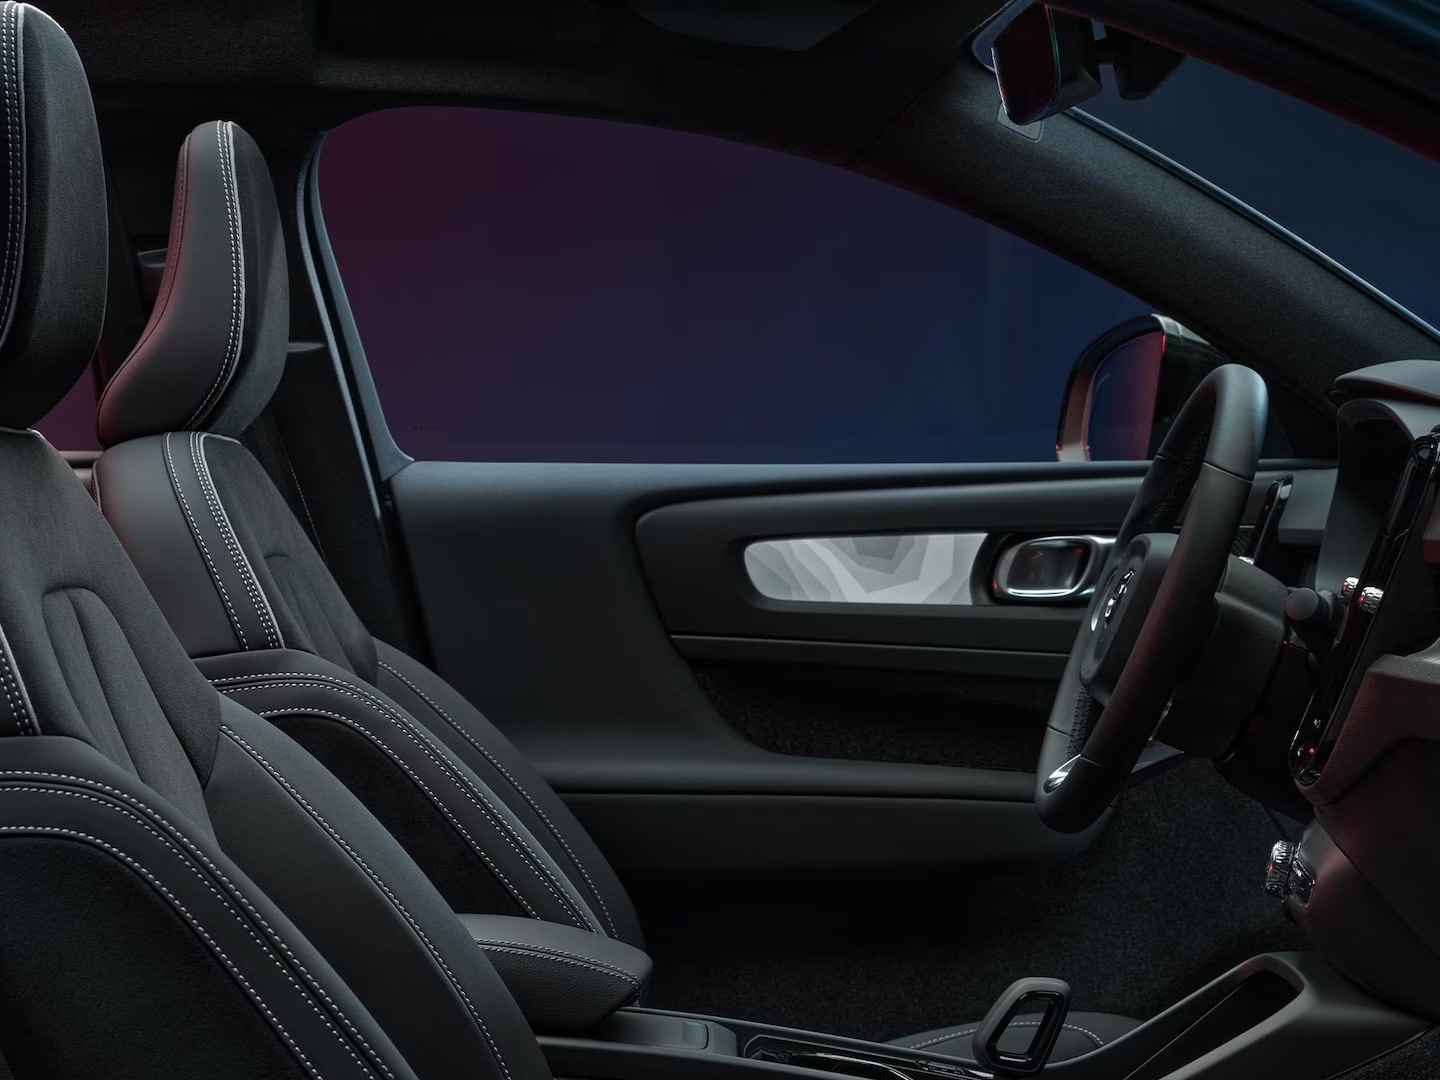 Vista interior de los asientos delanteros y el volante del Volvo C40 Recharge.